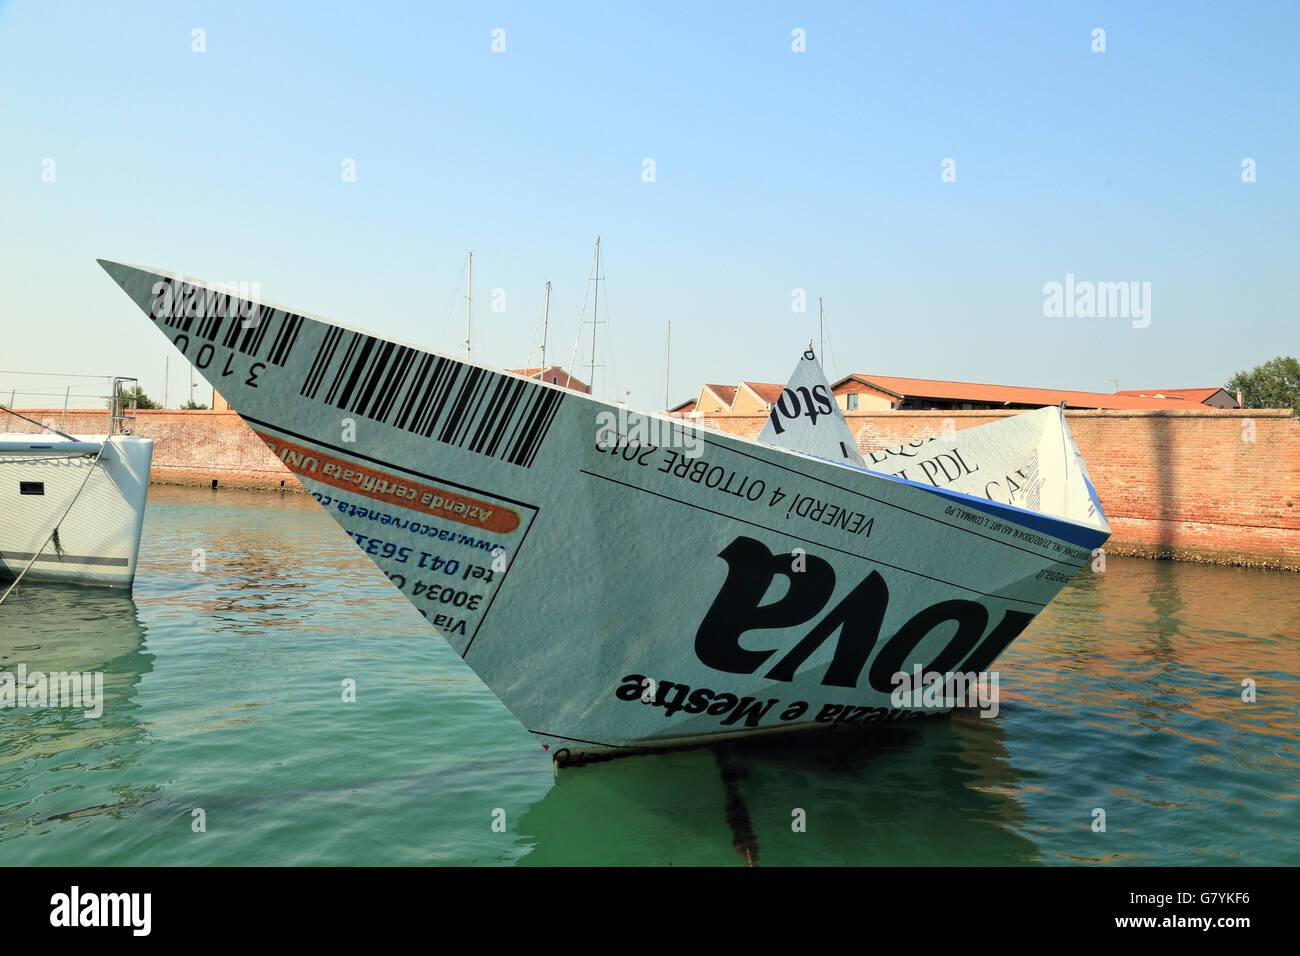 Venice Biennale - Paper boat 'Knjaz’ Potëmkin Tavriceskij' 'La corazzata Potëmkin' (battleship Potemkin) by Marco Tracanelli Stock Photo